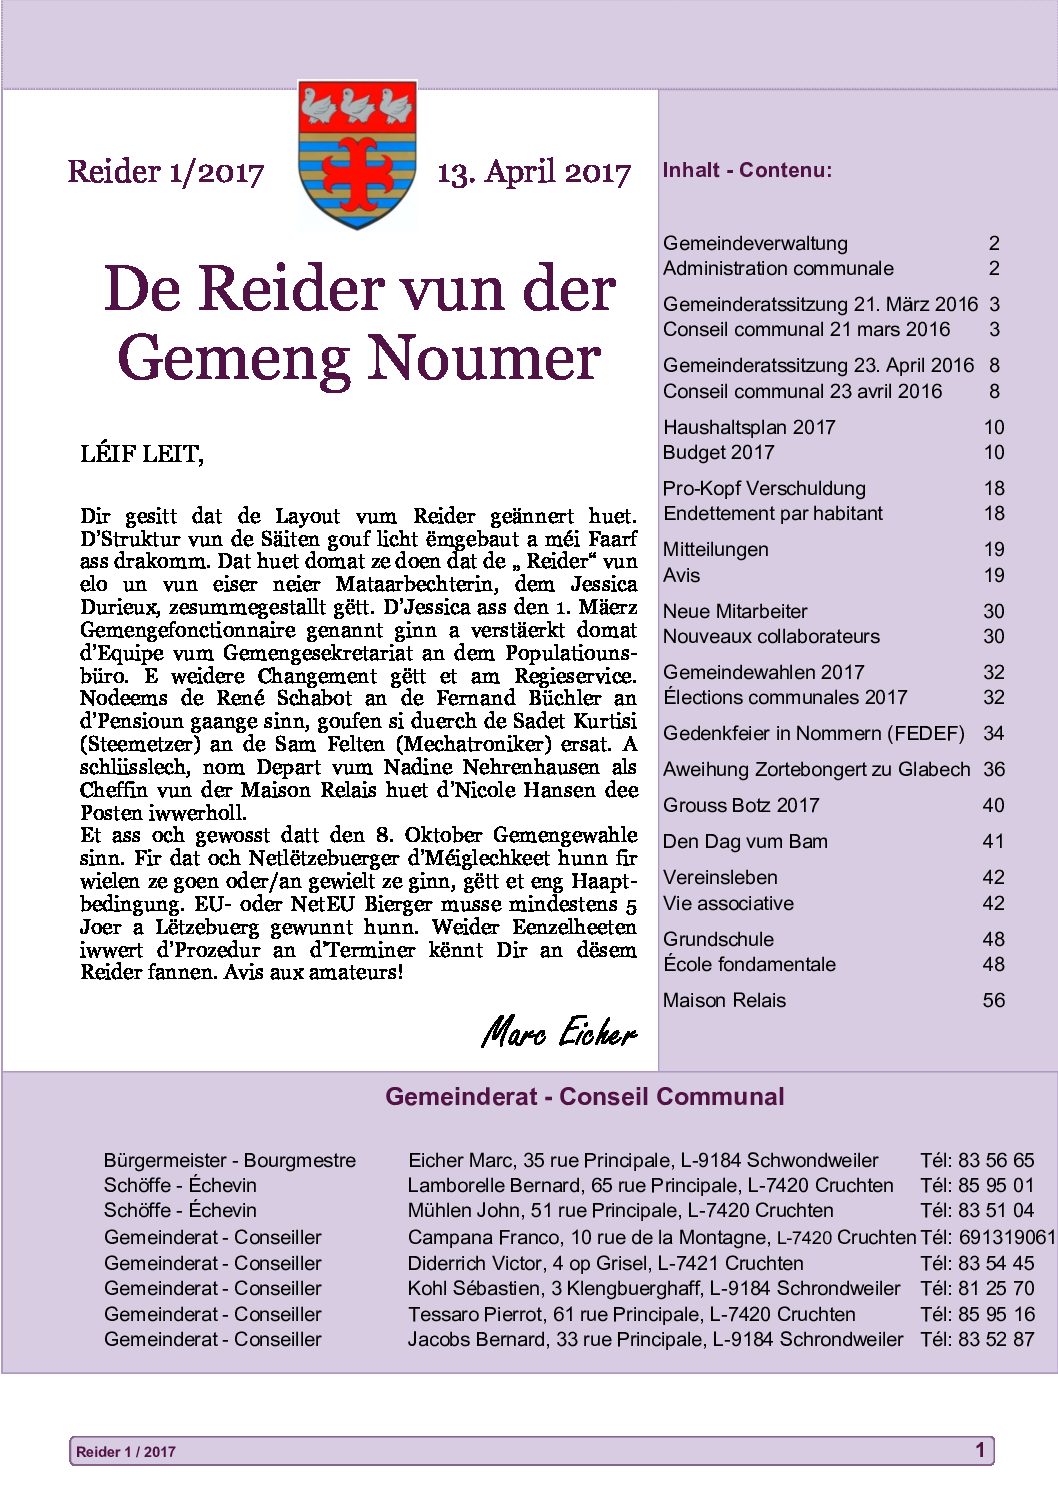 De Reider 2017-1